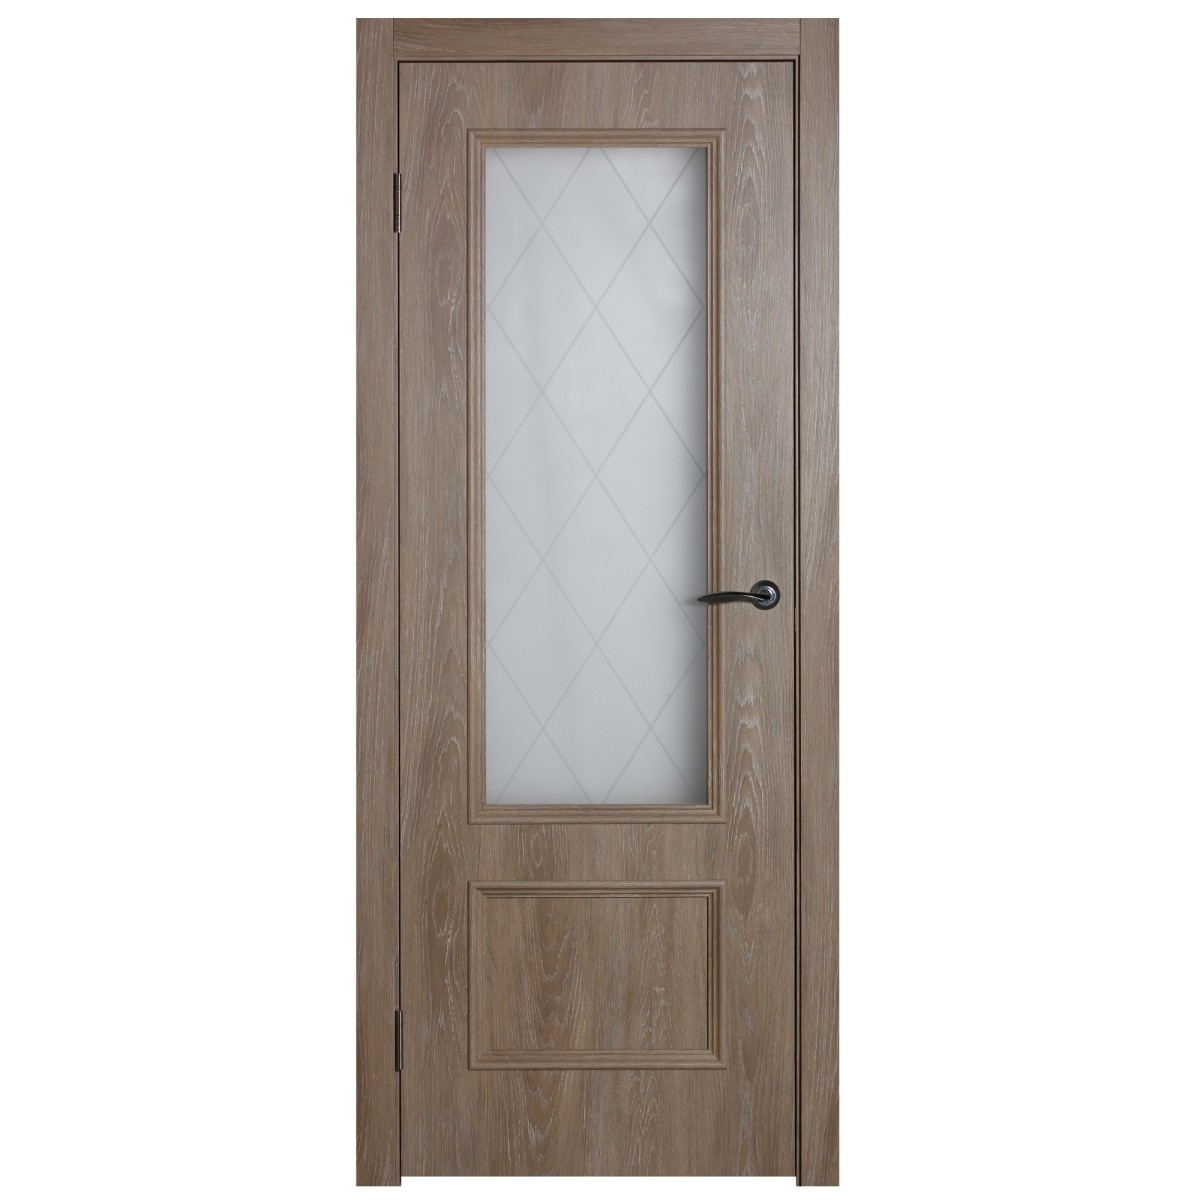 Дверь межкомнатная остеклённая Престиж 60x200 см цвет натуральный дуб